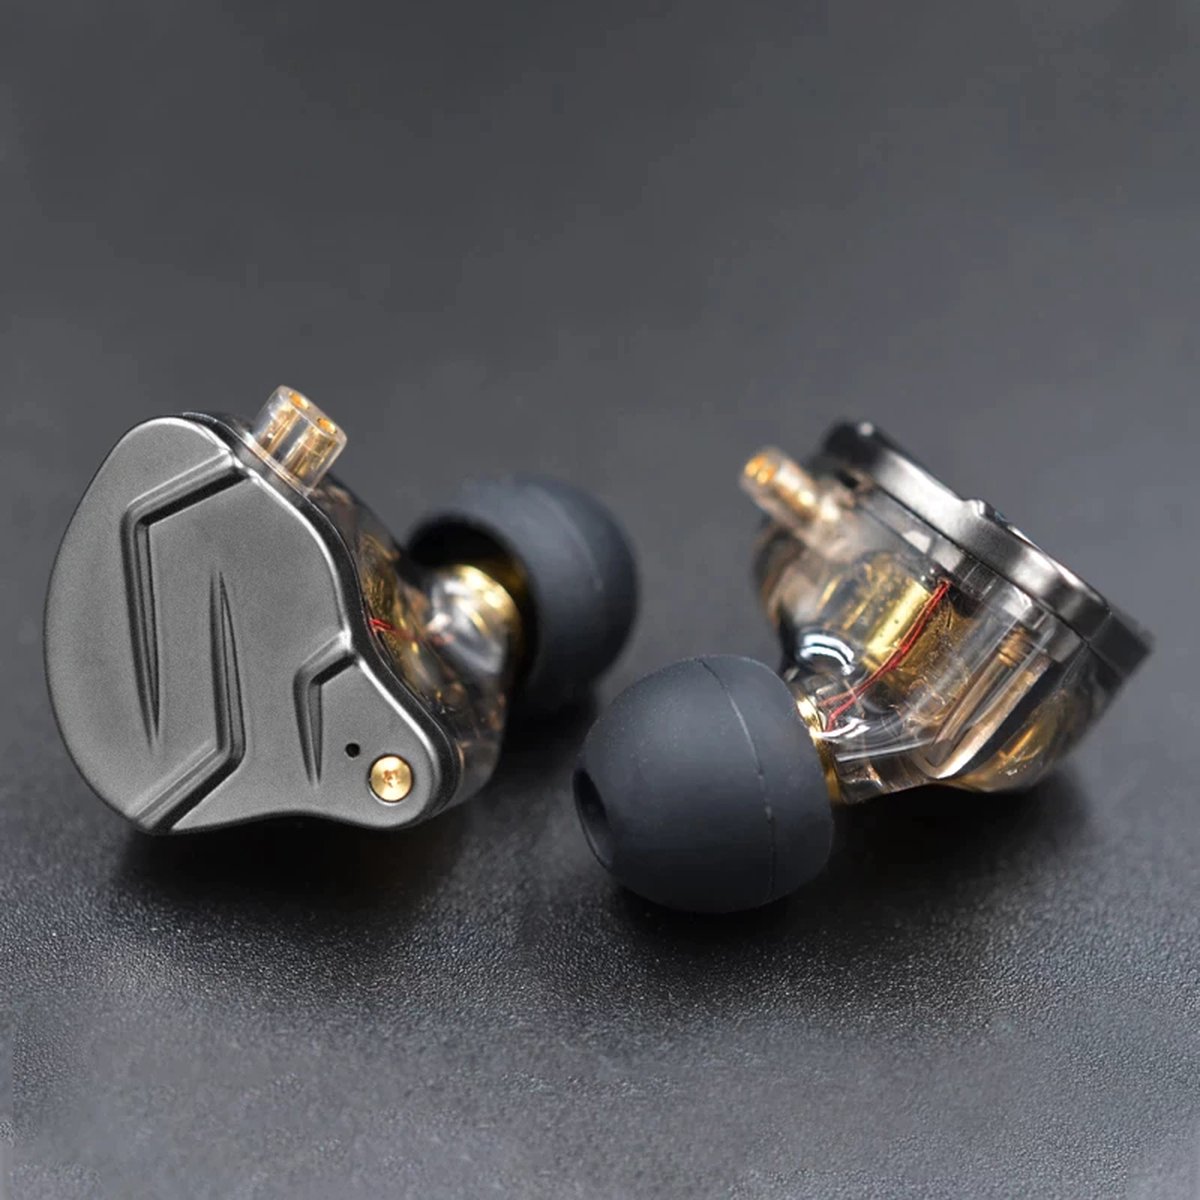 KZ ZSN Pro X In ear headphones 3.5mm jack